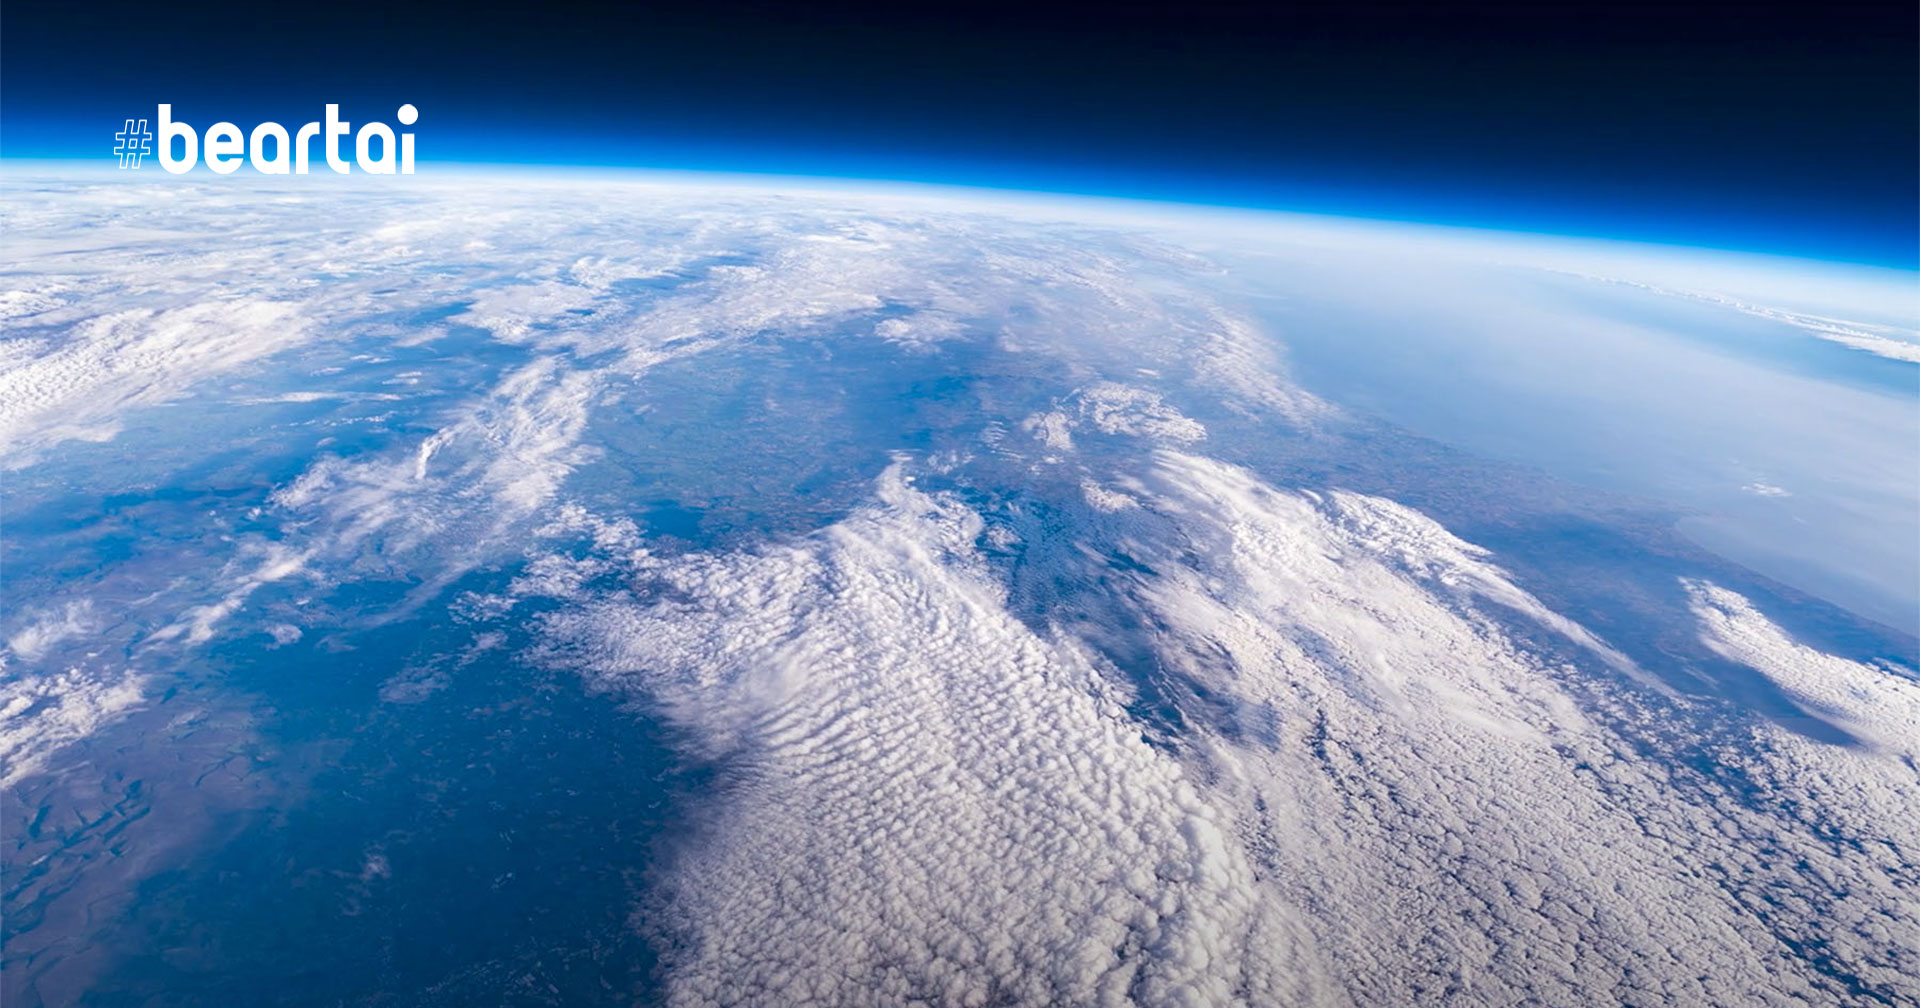 จะเป็นอย่างไร ถ้าส่งกล้องมิเรอร์เลส Sigma fp ขึ้นไปบันทึกวิดีโอ 4K ที่ความสูง 100000 feet บนชั้นบรรยากาศโลก